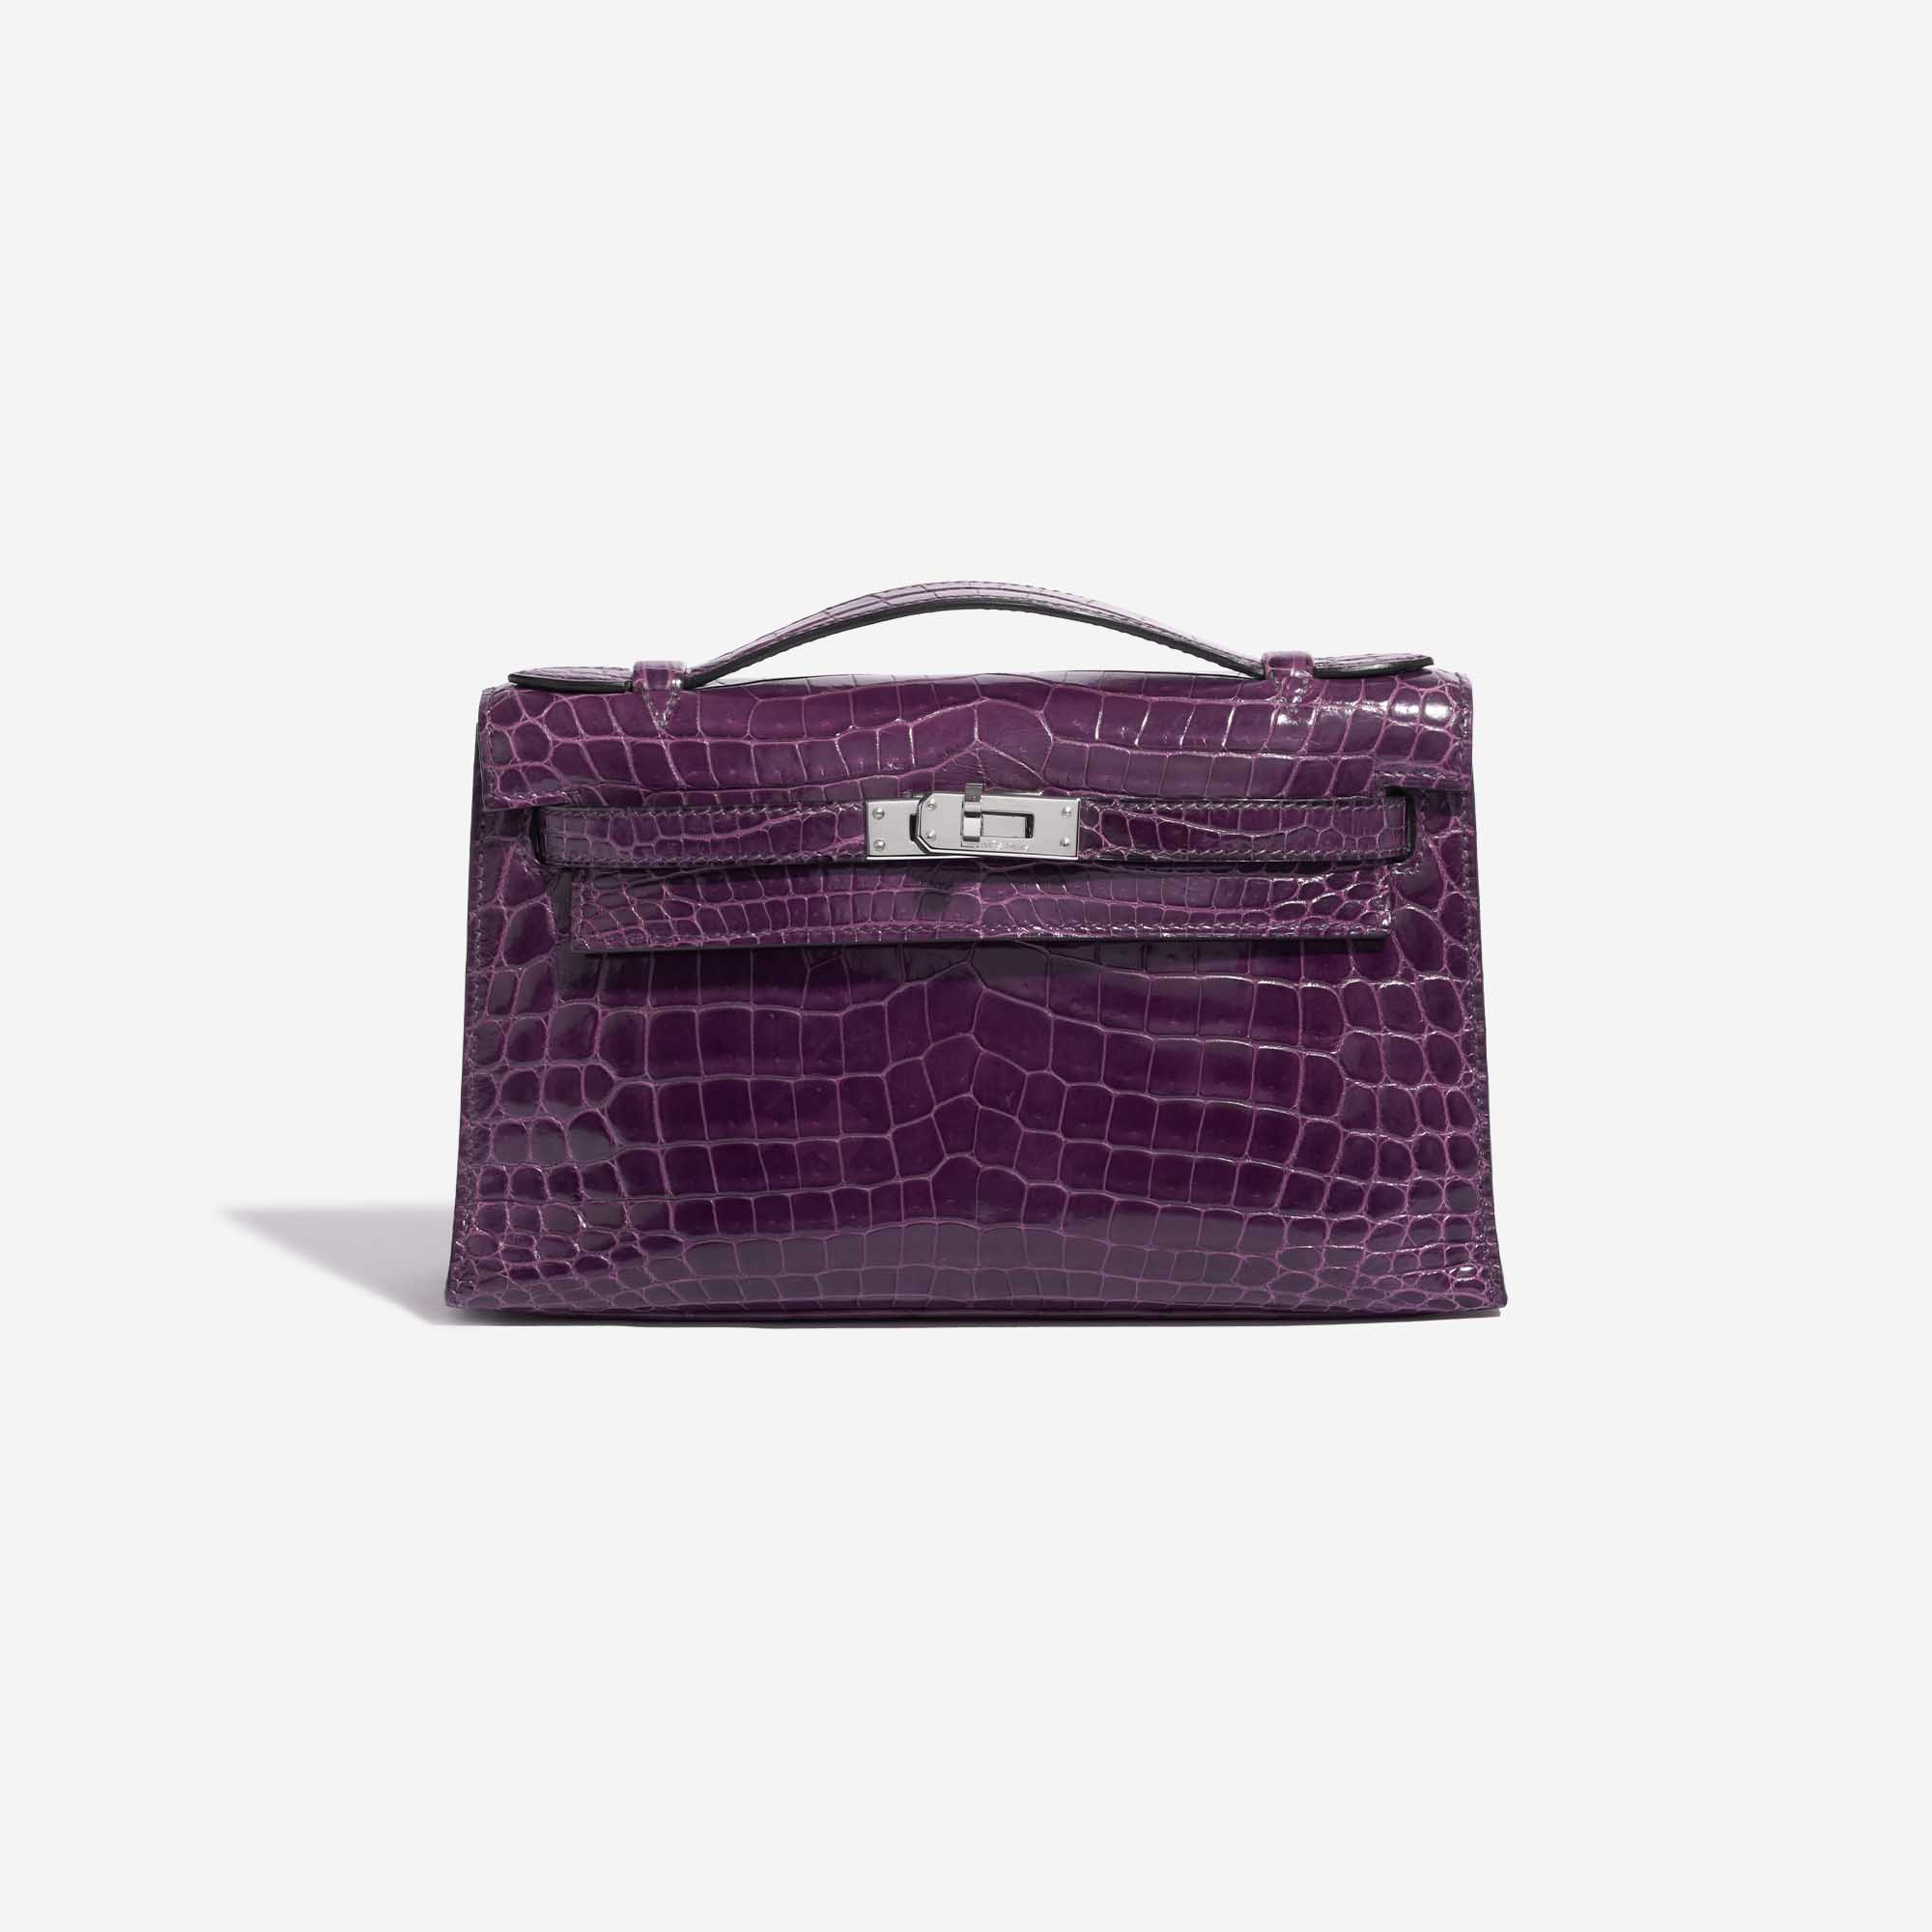 Pre-owned Hermès Tasche Kelly Pochette Alligator Amethyst Violet Front | Verkaufen Sie Ihre Designer-Tasche auf Saclab.com